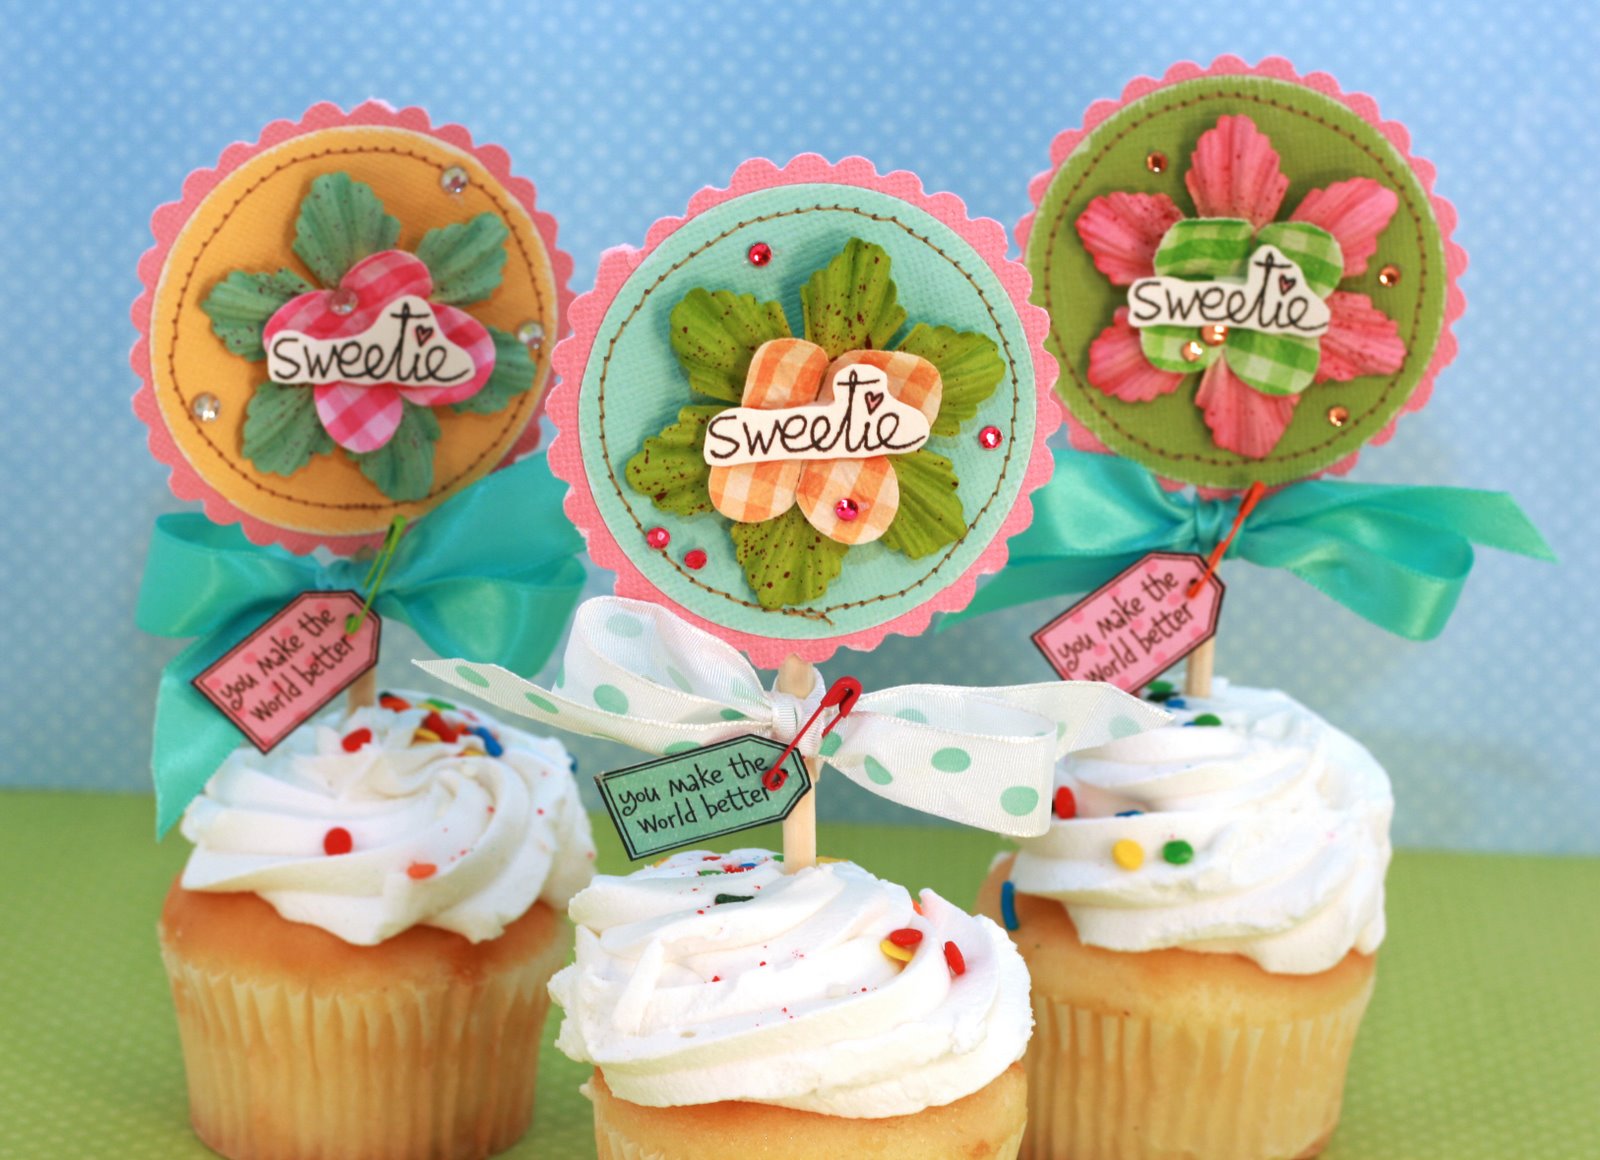 [sweetie+cupcakes.jpg]